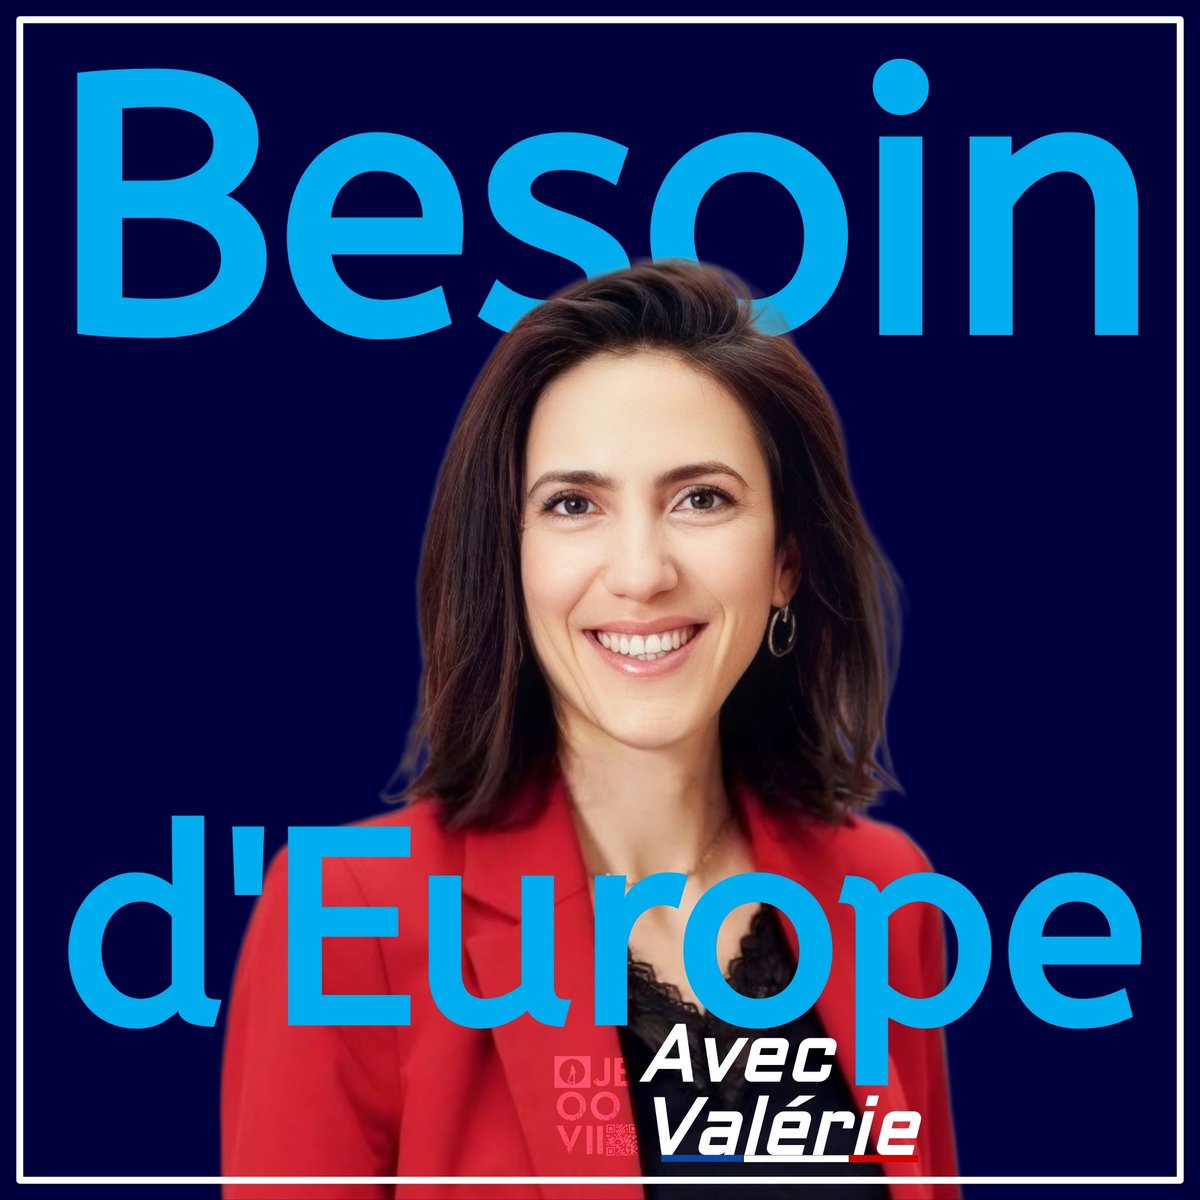 #BesoinDEurope avec #ValerieHayer .

#BesoinDEurope 
#BesoindEuropeLille